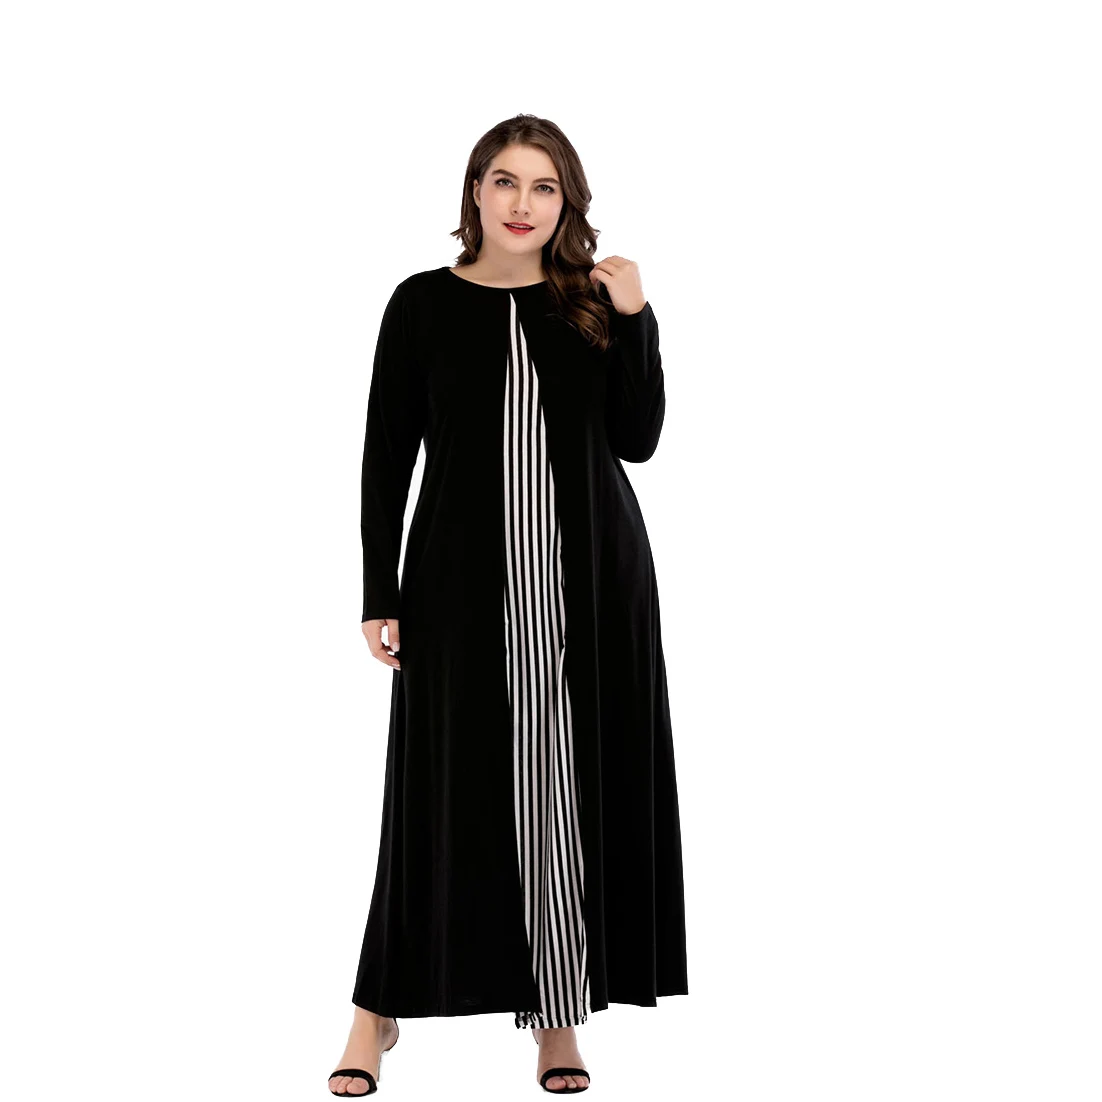 Nouveau modèle De Mode manches longues rayure simple couture musulman noir grande taille abaya avec tissu noir 100% polyester